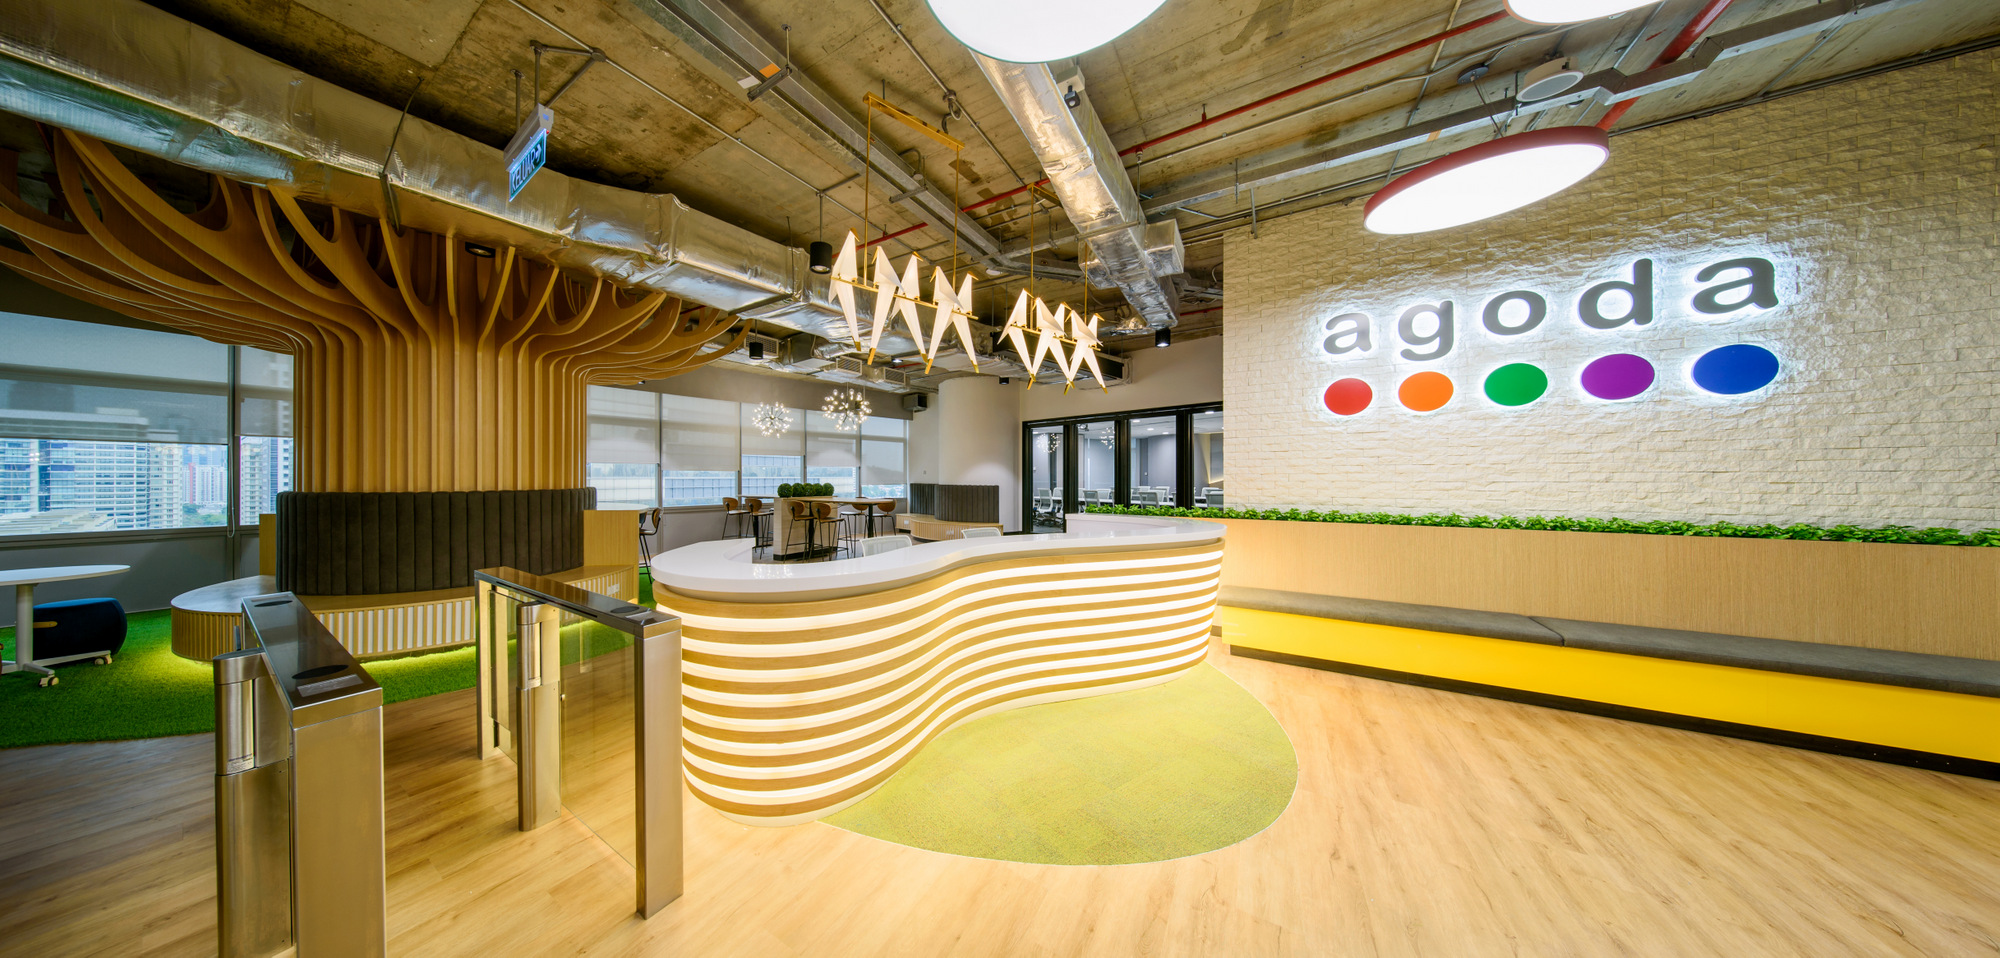 Agoda办事处——吉隆坡|ART-Arrakis | 建筑室内设计的创新与灵感